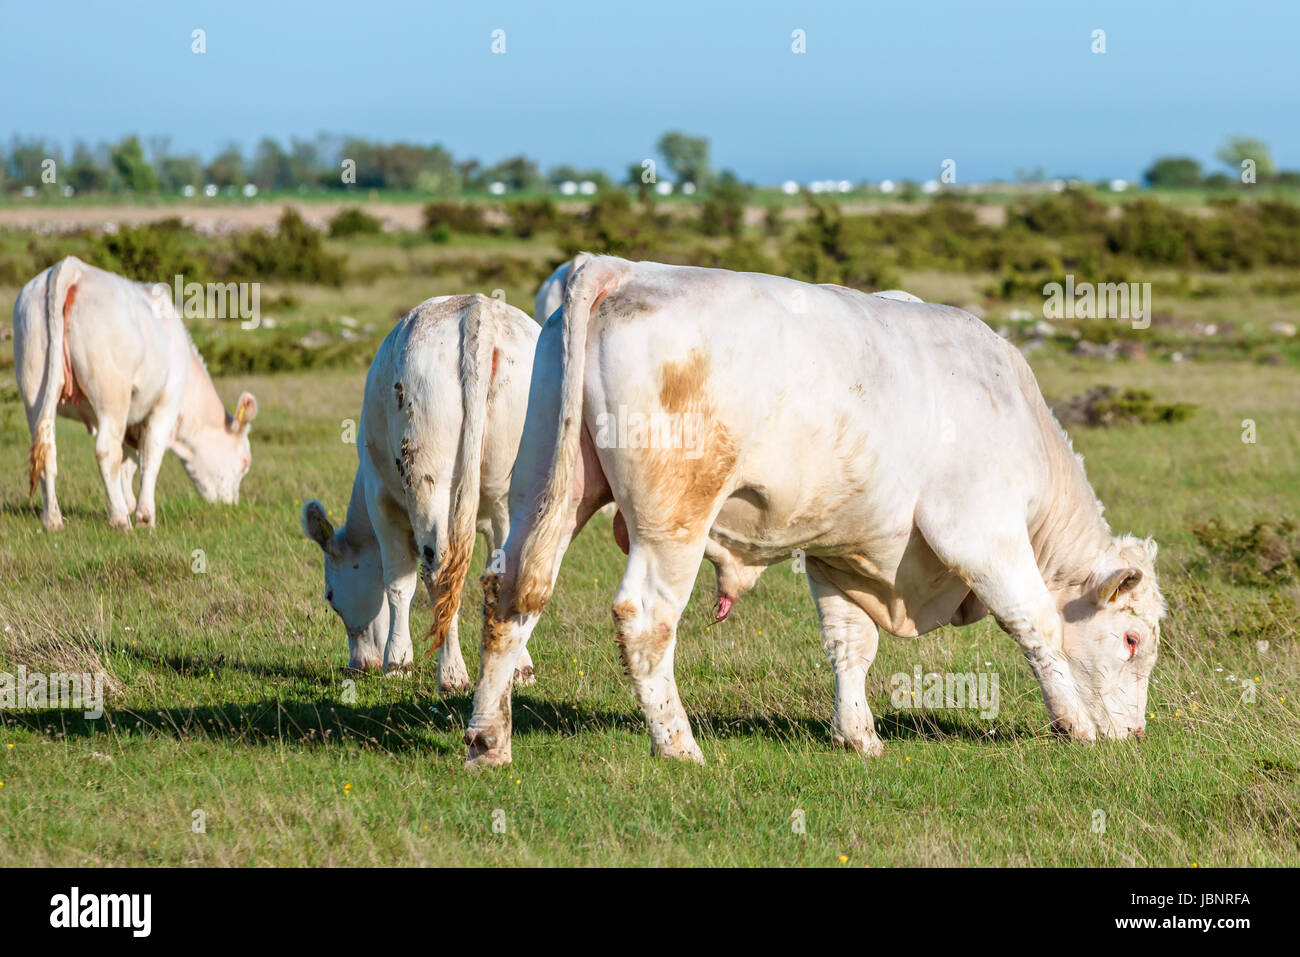 Golden beige steer walking with heifers in barren landscape. Stock Photo